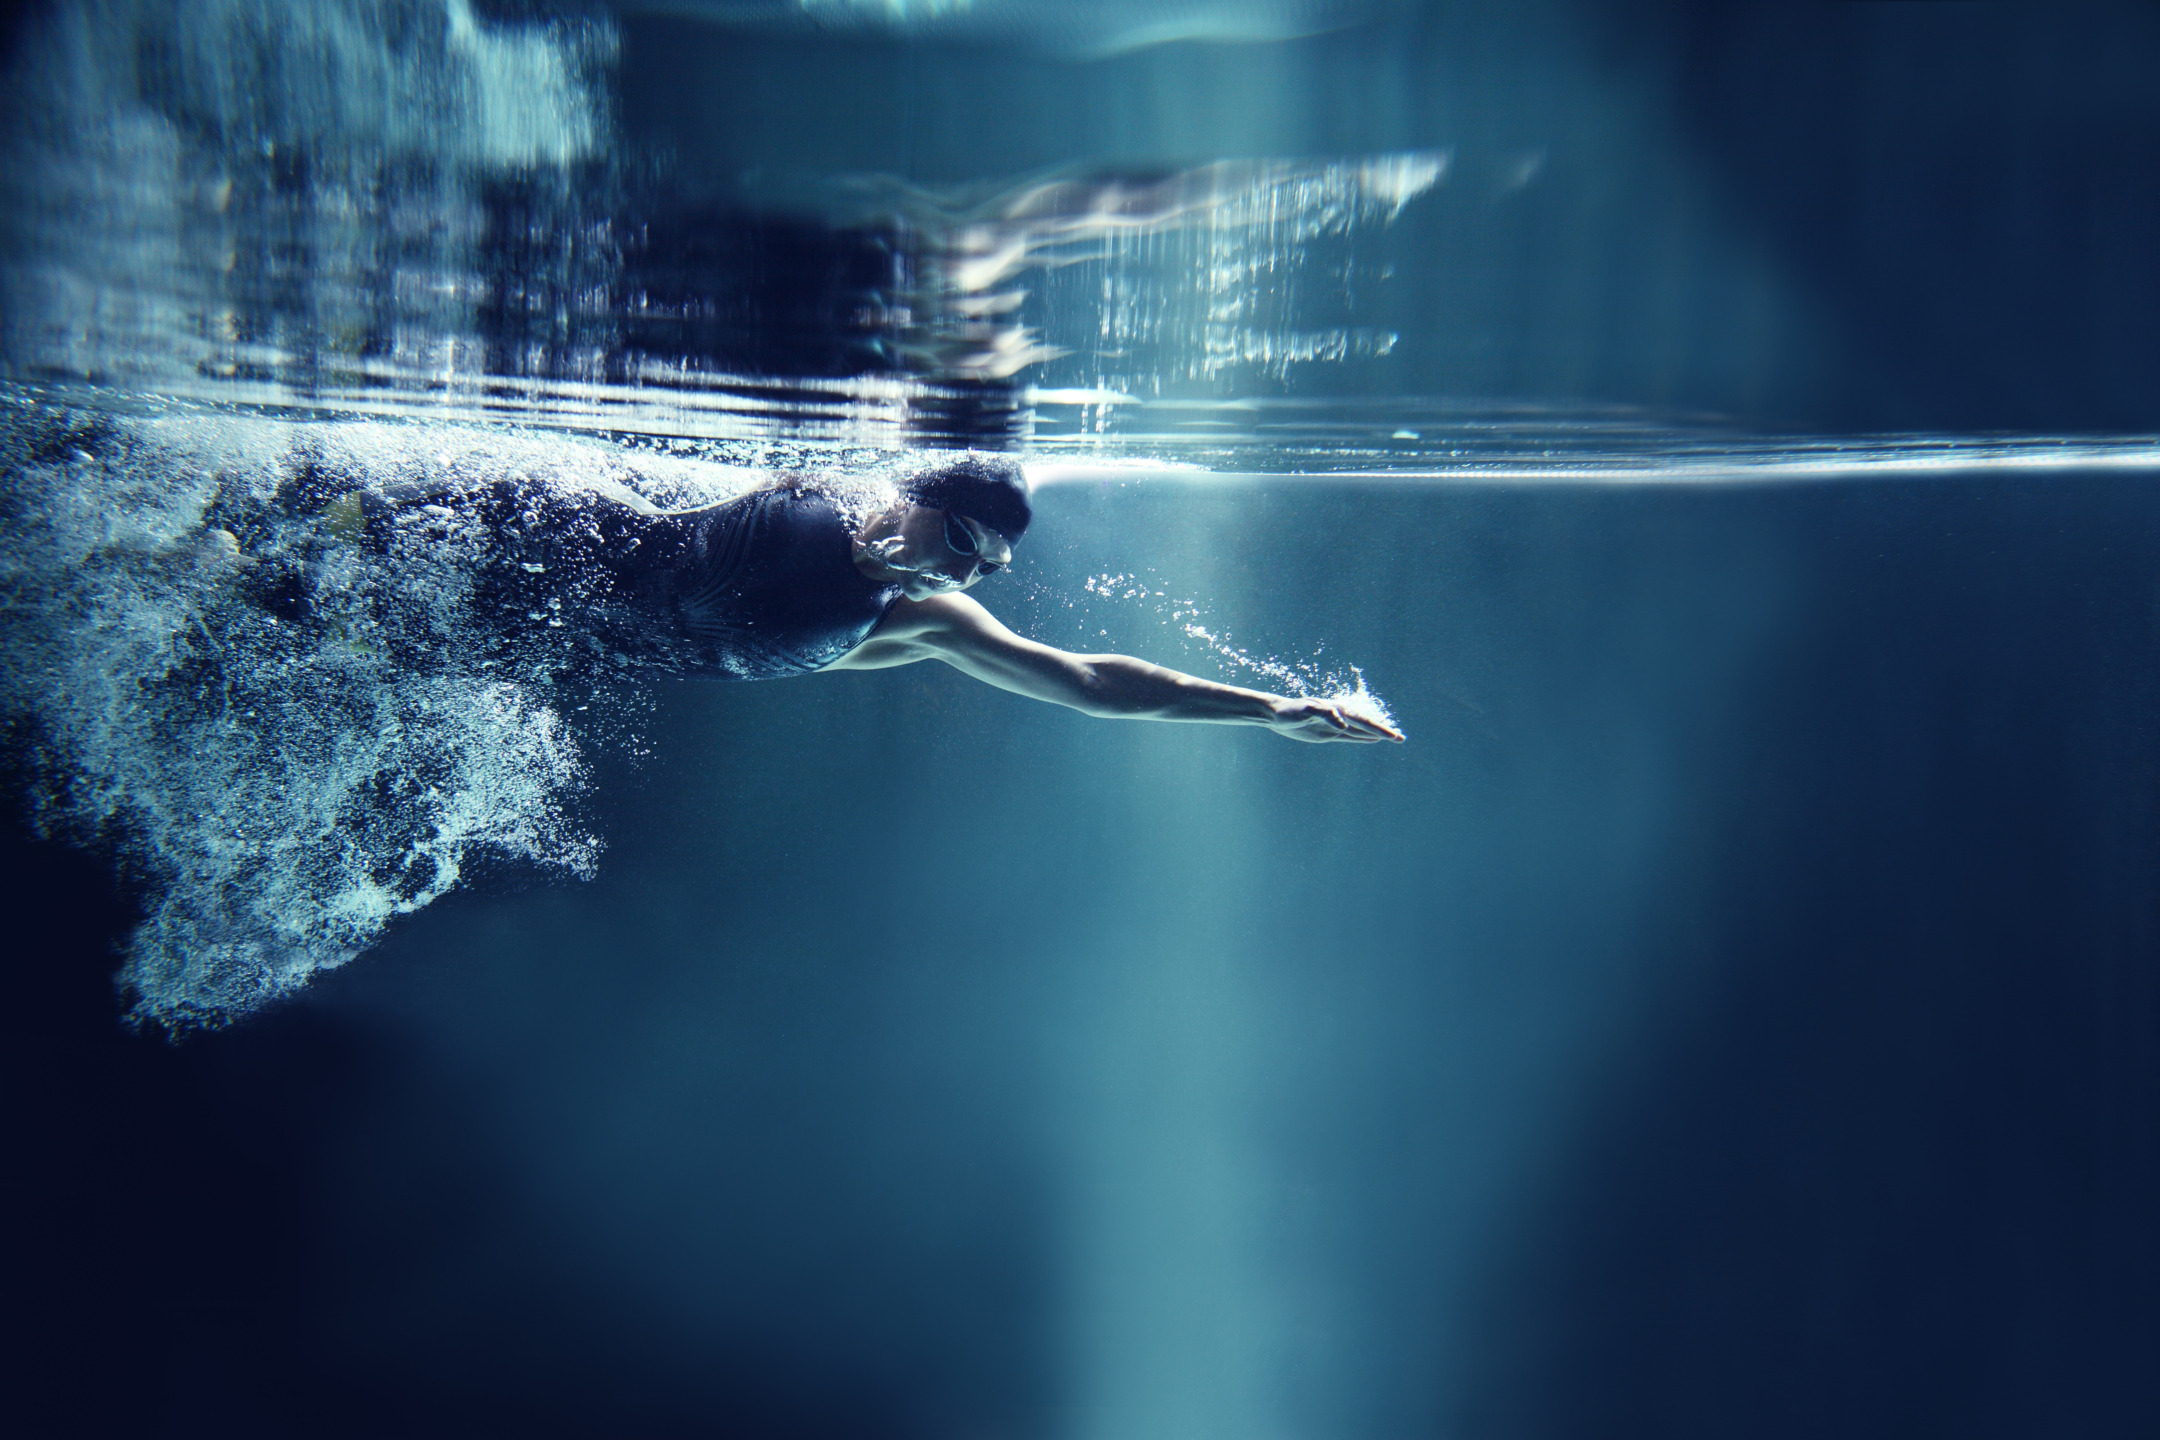 nuotatore professionista in piscina durante un allenamento di nuoto propedeutico alla preparazione atletica del cavaliere